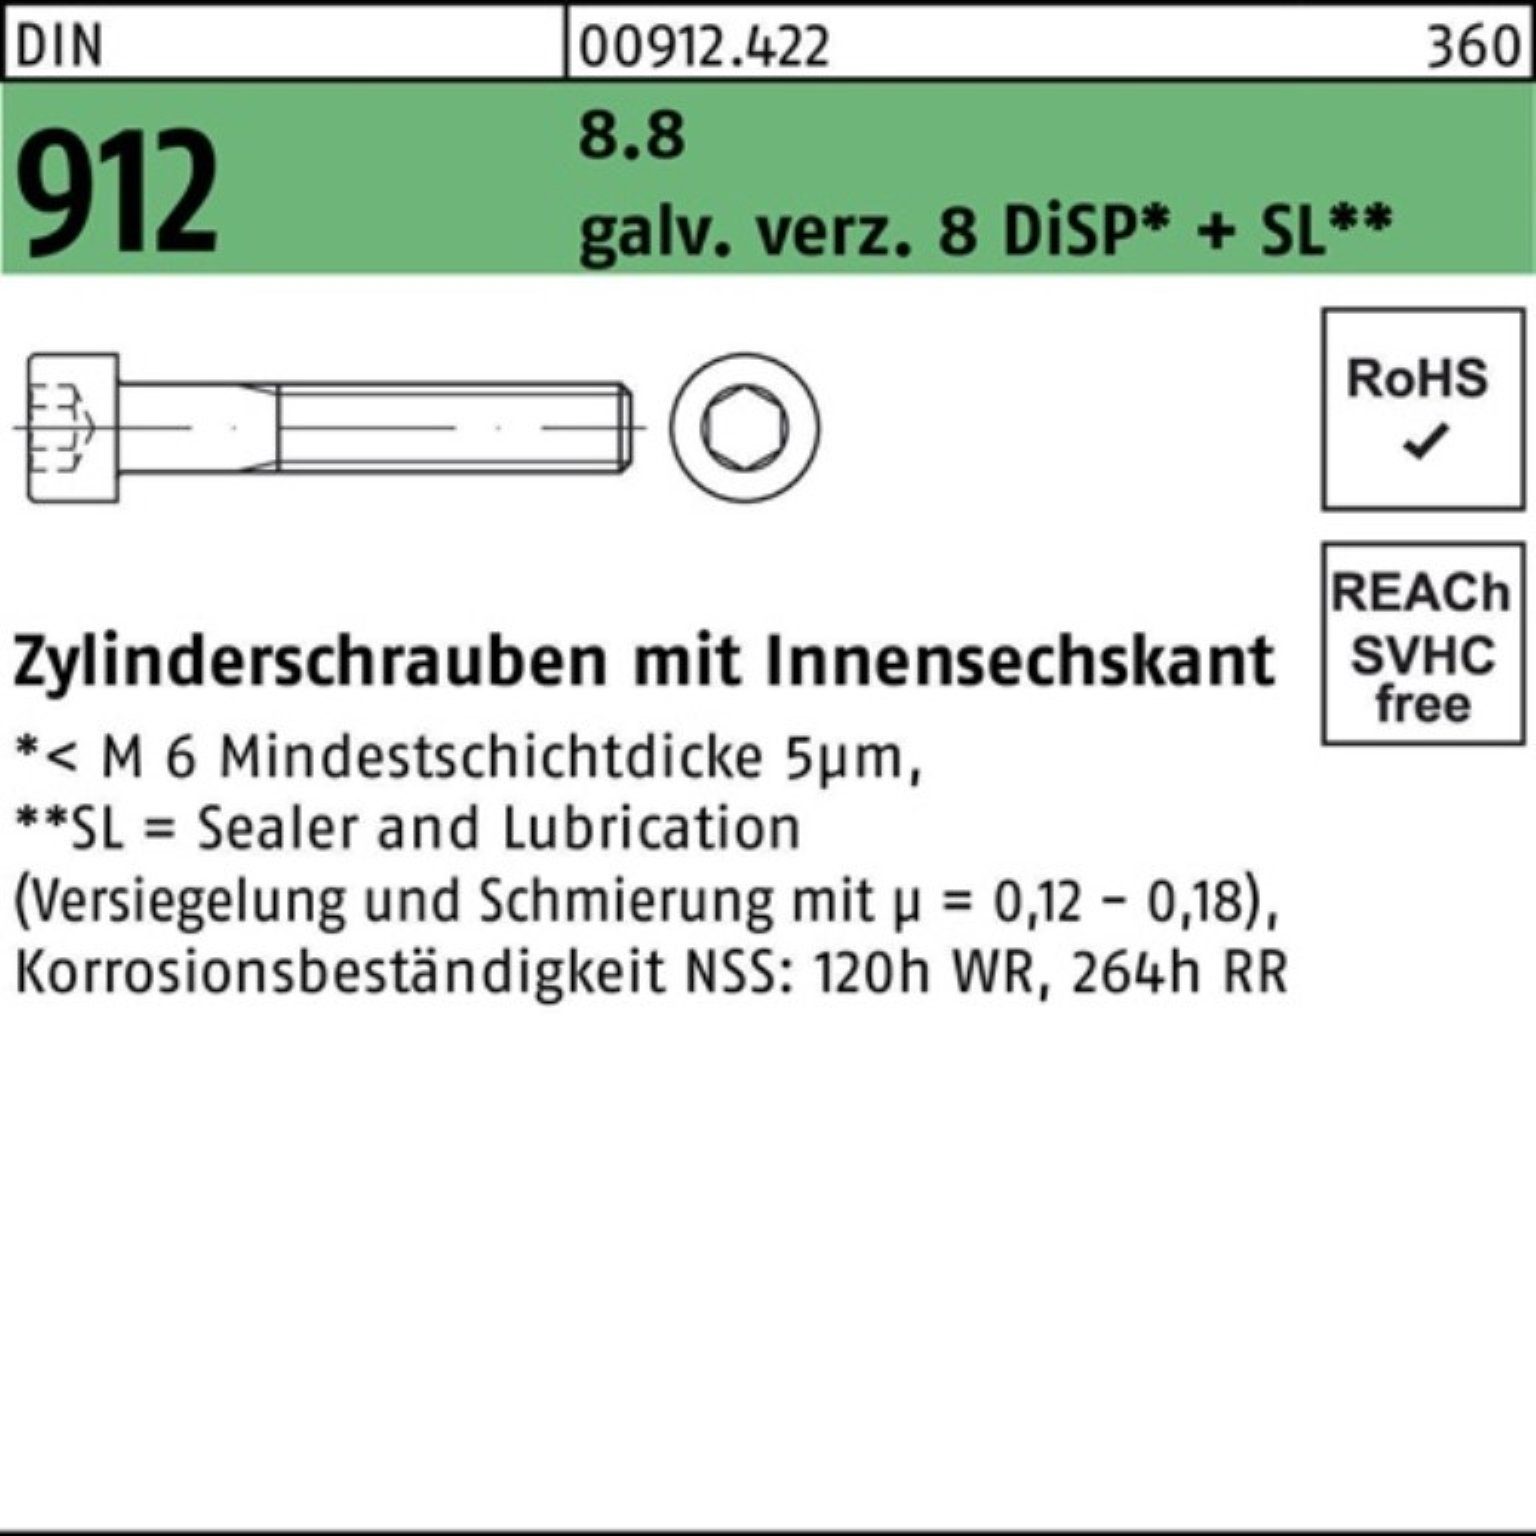 Reyher Zylinderschraube 100er 912 65 DIN Zylinderschraube DiS Innen-6kt 8.8 Zn Pack gal 8 M20x